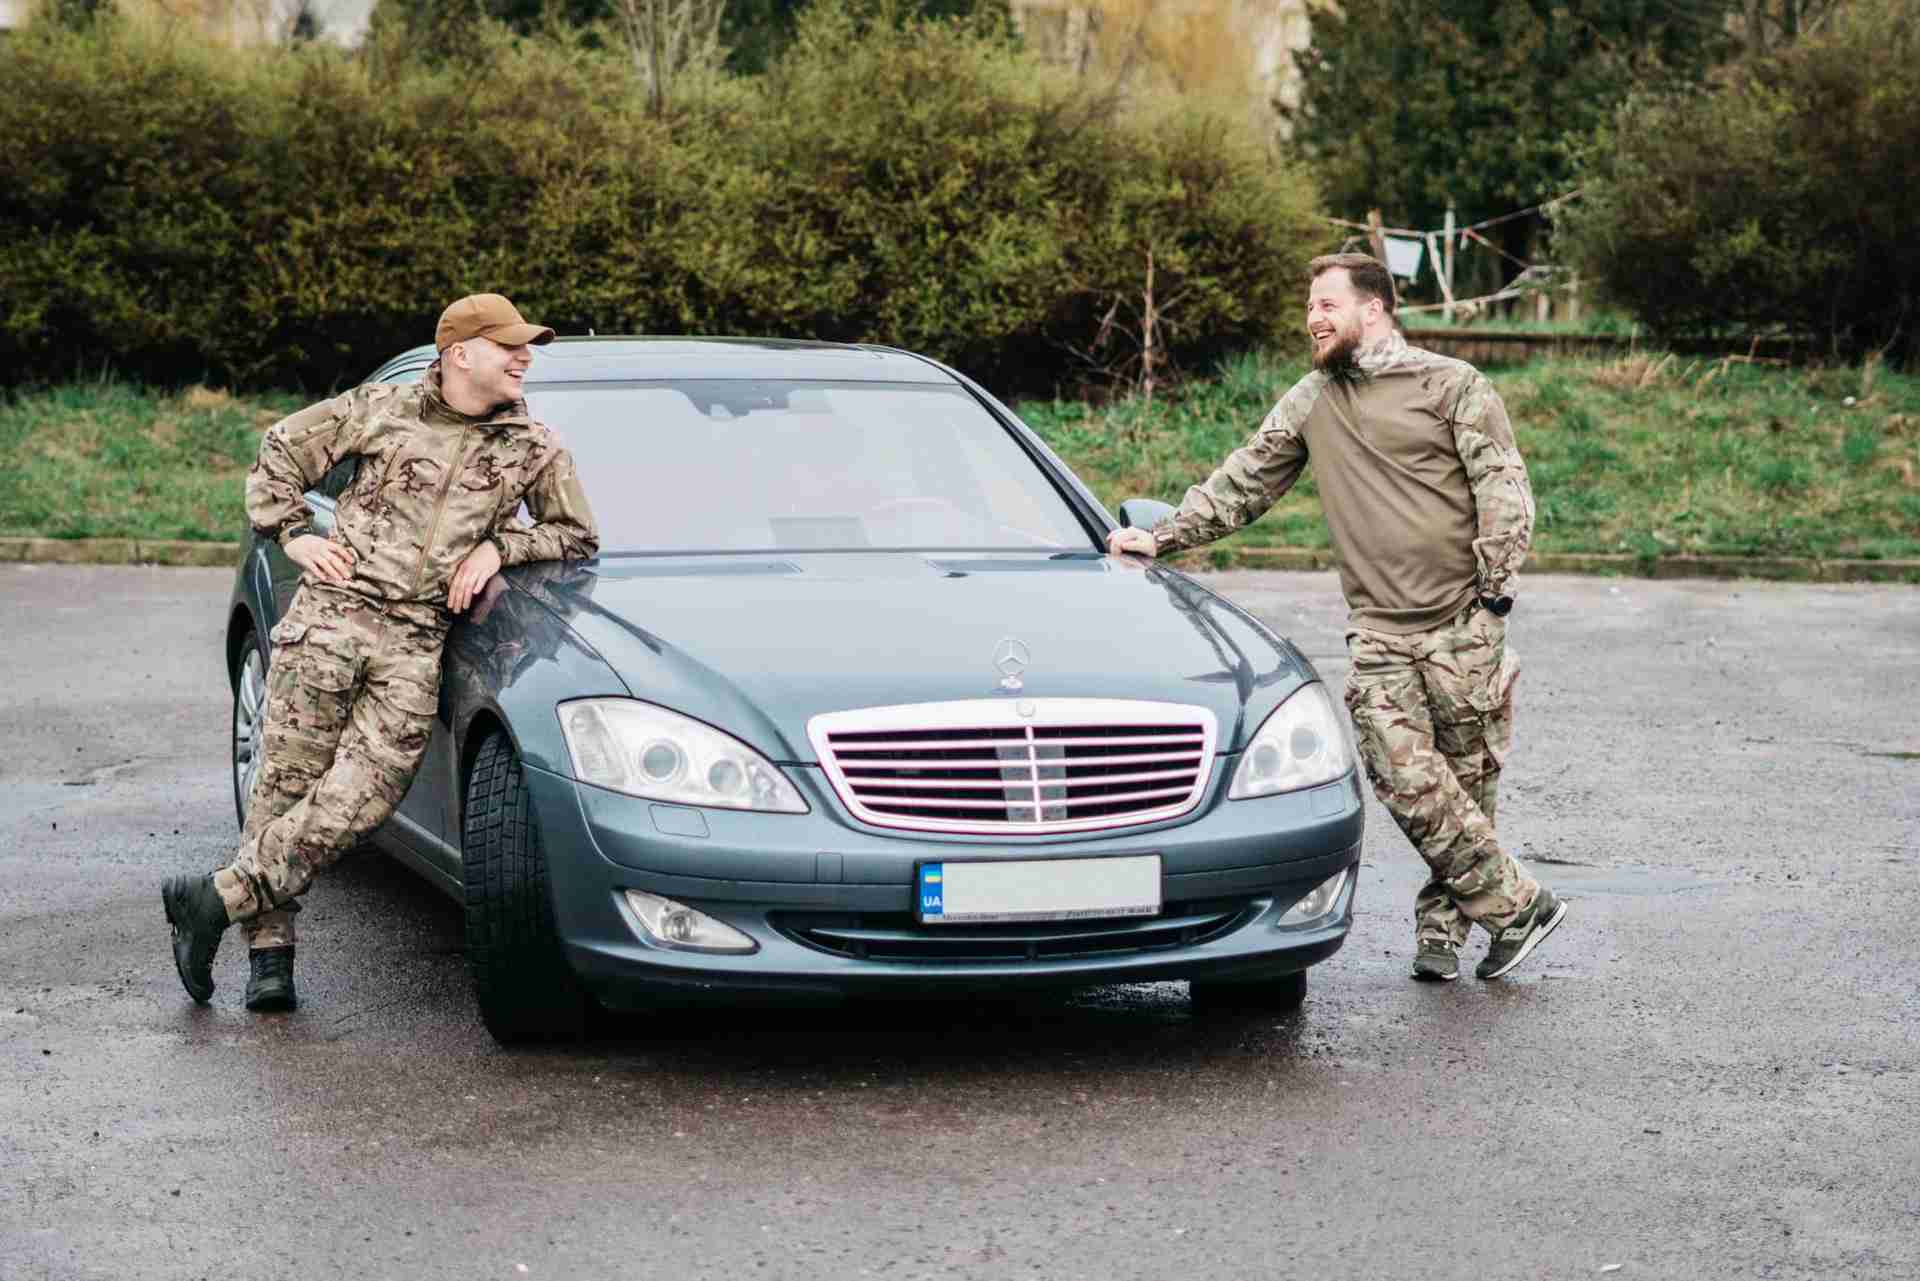 Львівські військові розігрують преміальний «Mercedes» за донат на ЗСУ (ФОТО)